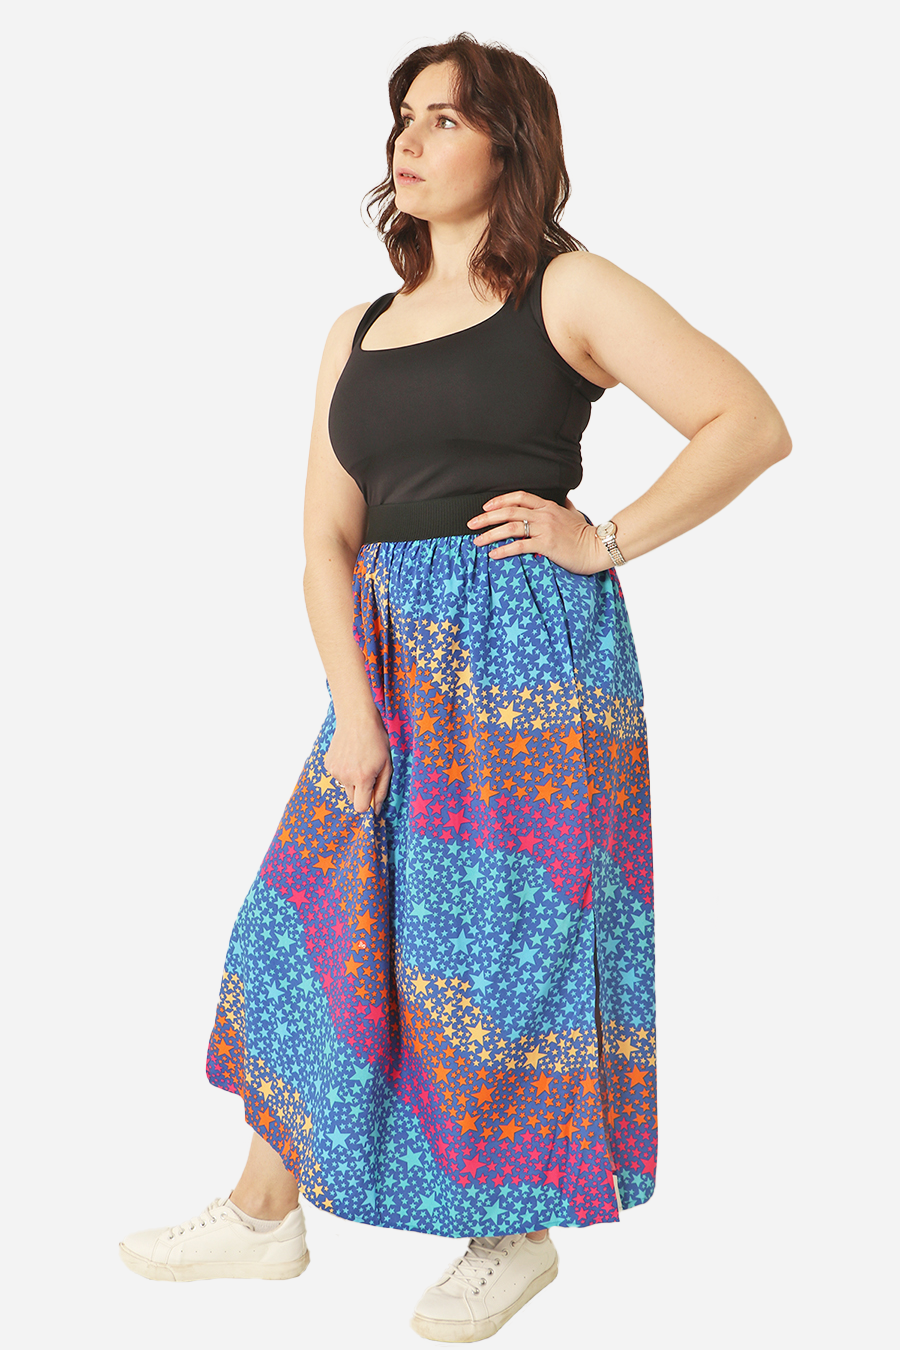 Royal Blue Fuchsia Star Wave Elasticated Waistband Maxi Skirt